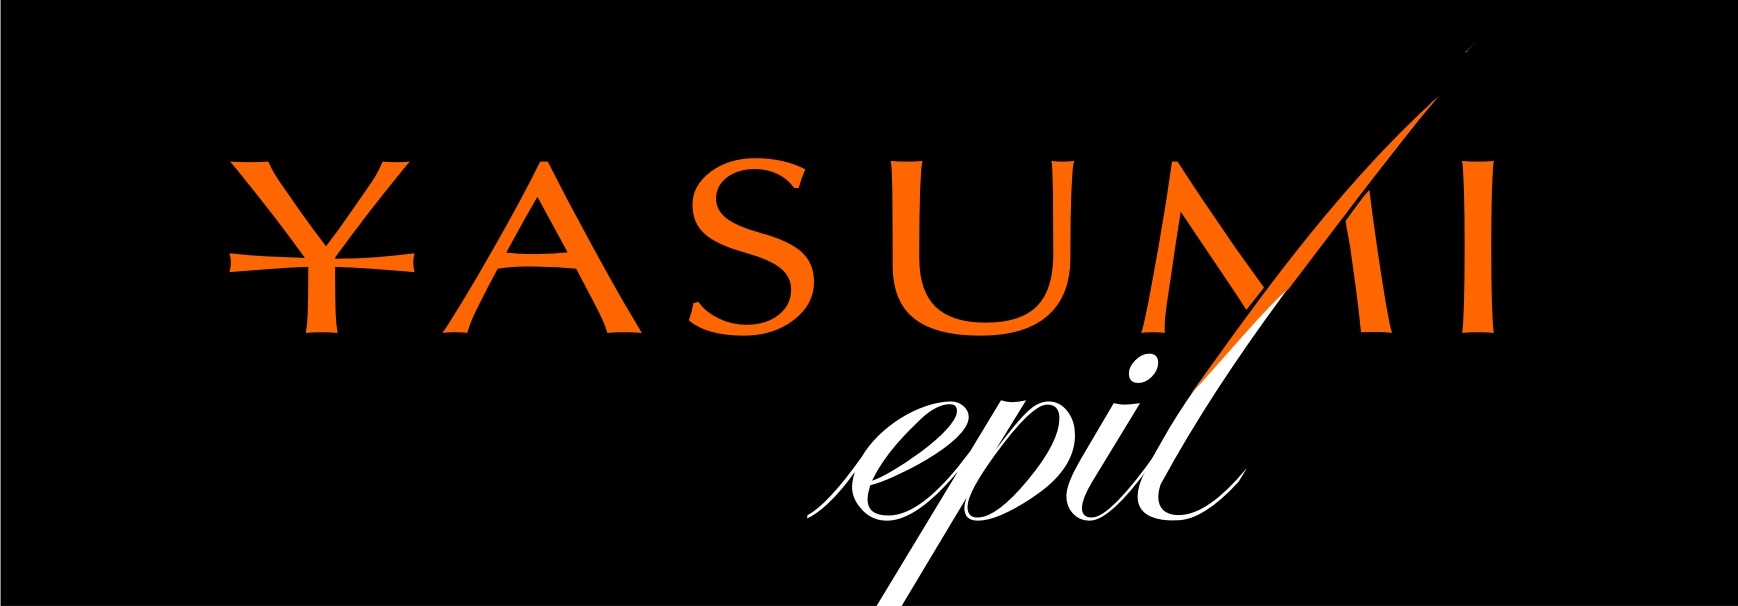 yasumi epil logo franczyza